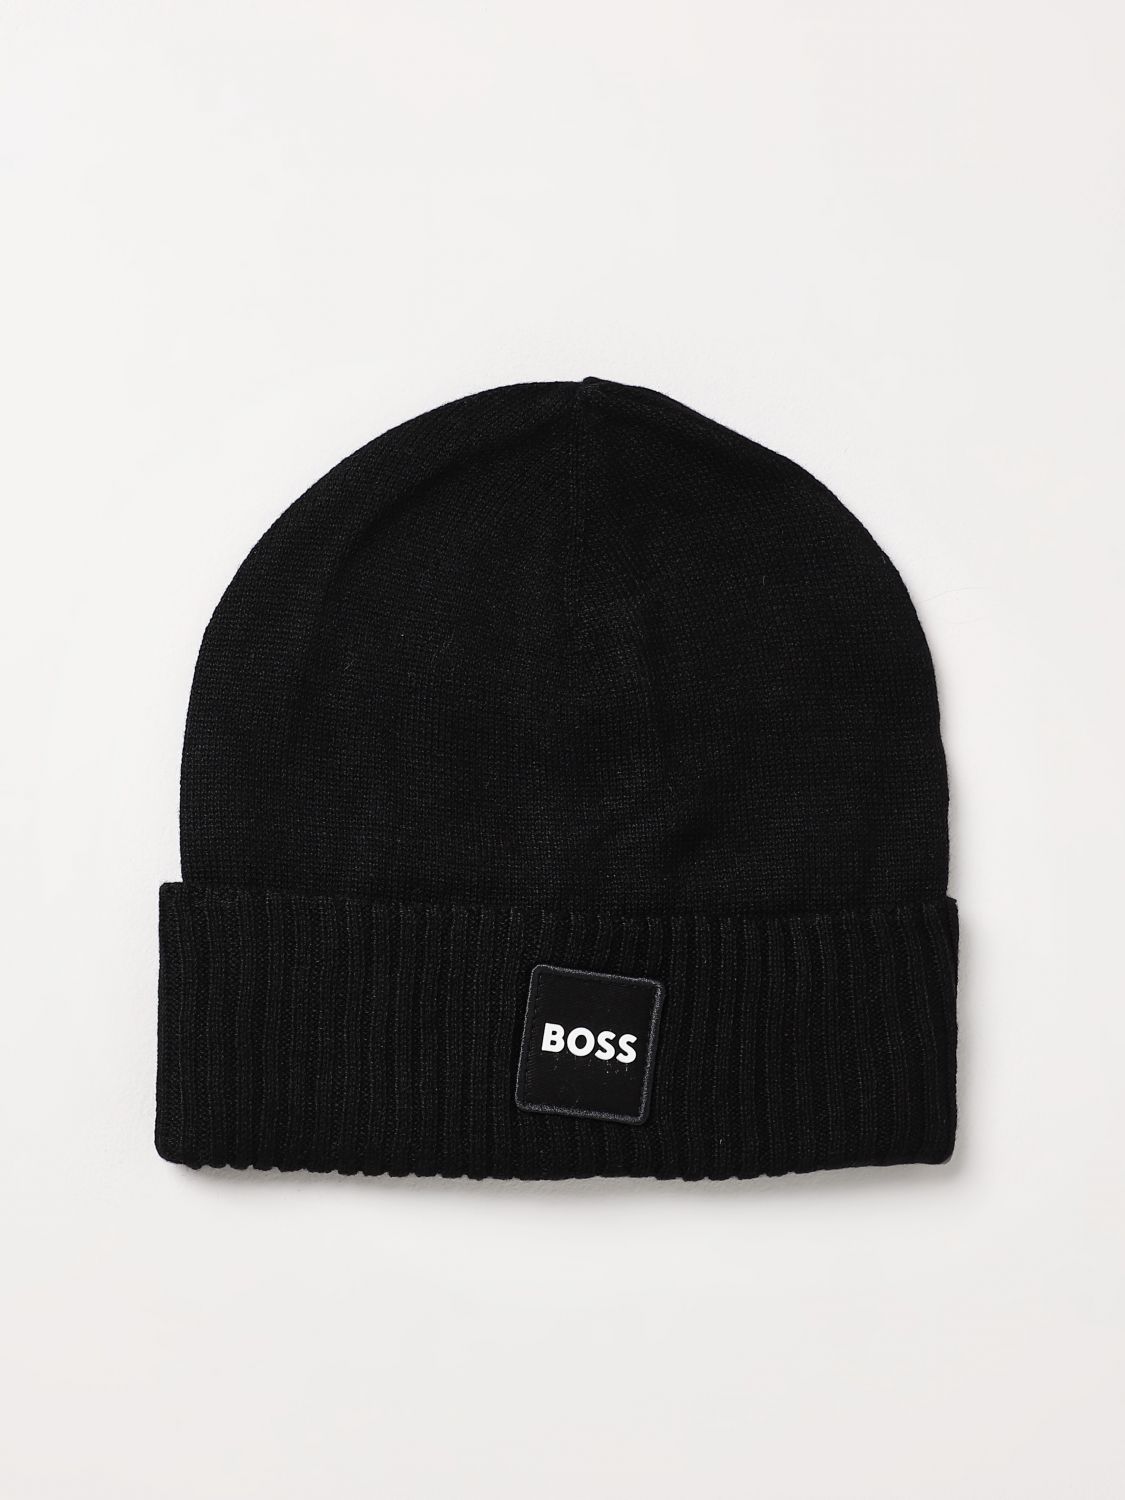 Bosswear Hat Boss Kidswear Kids Color Black